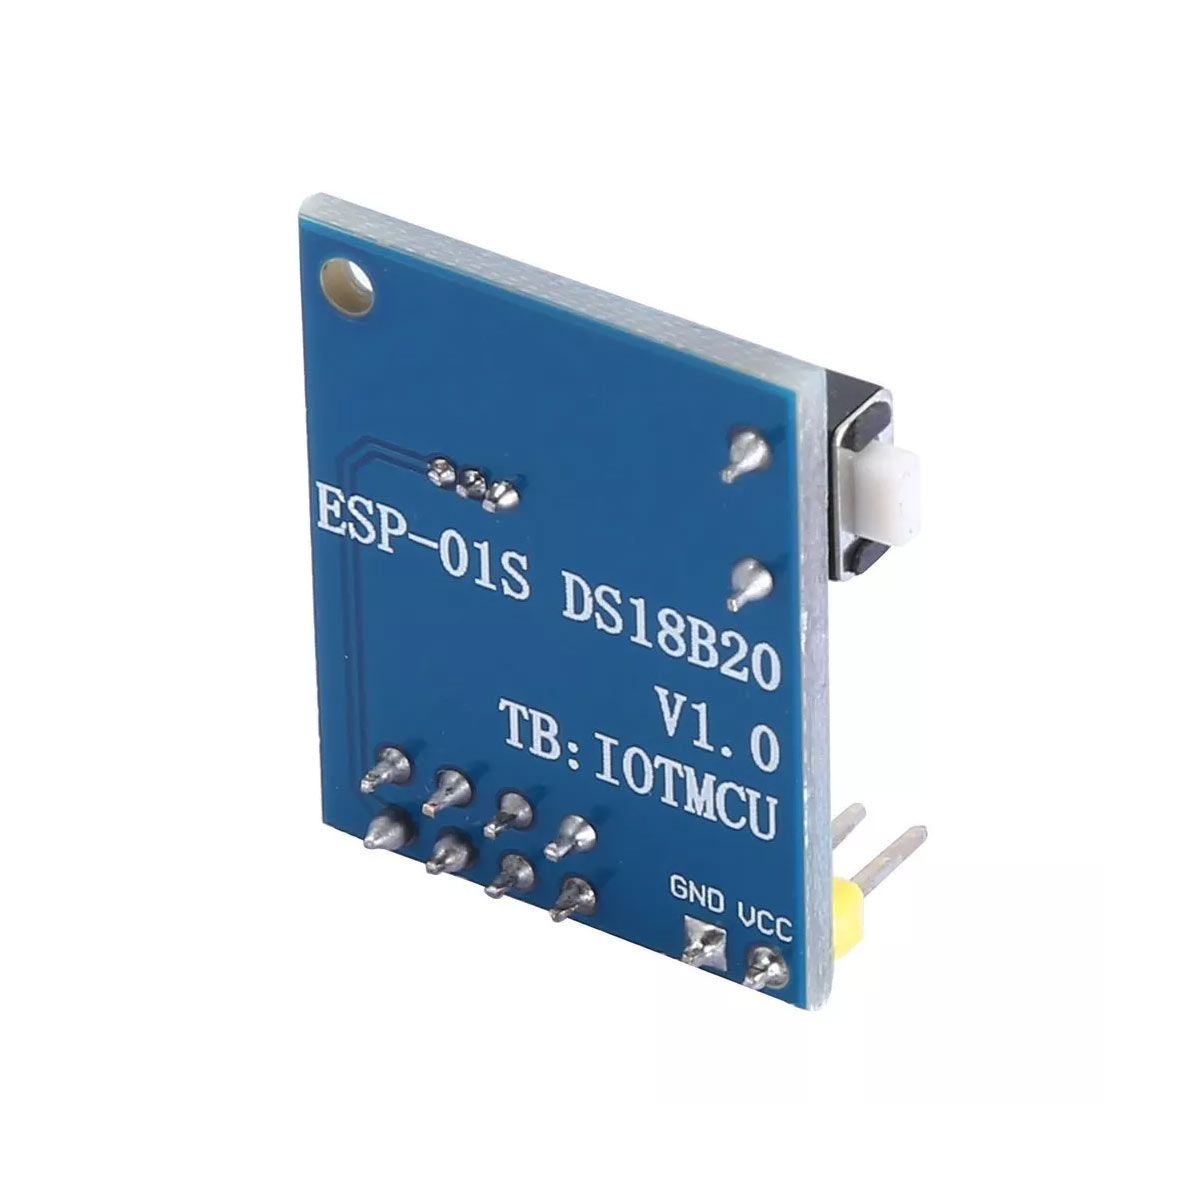 Shield Sensor De Temperatura Ds18b20 para Esp8266 Esp-01 Esp-01s